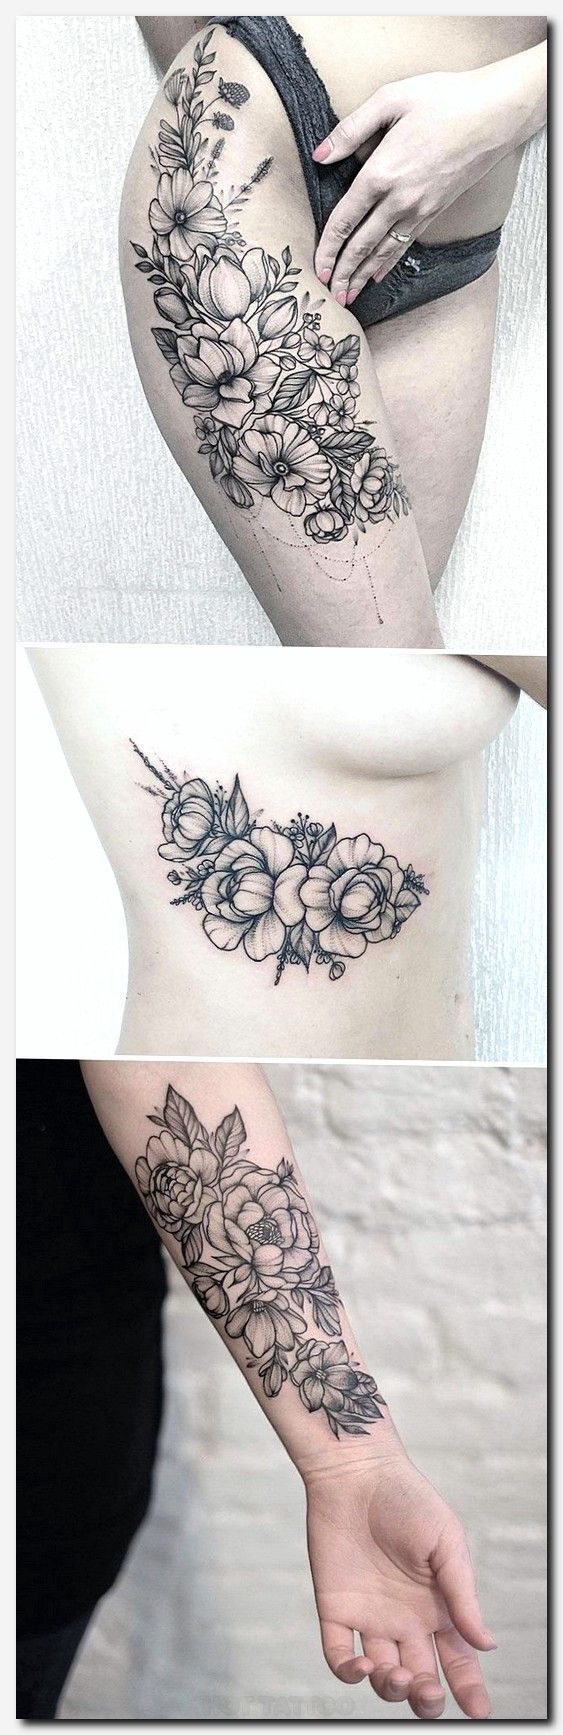 best rose sleeve tattoos ideas on pinterest rose tattoo 2